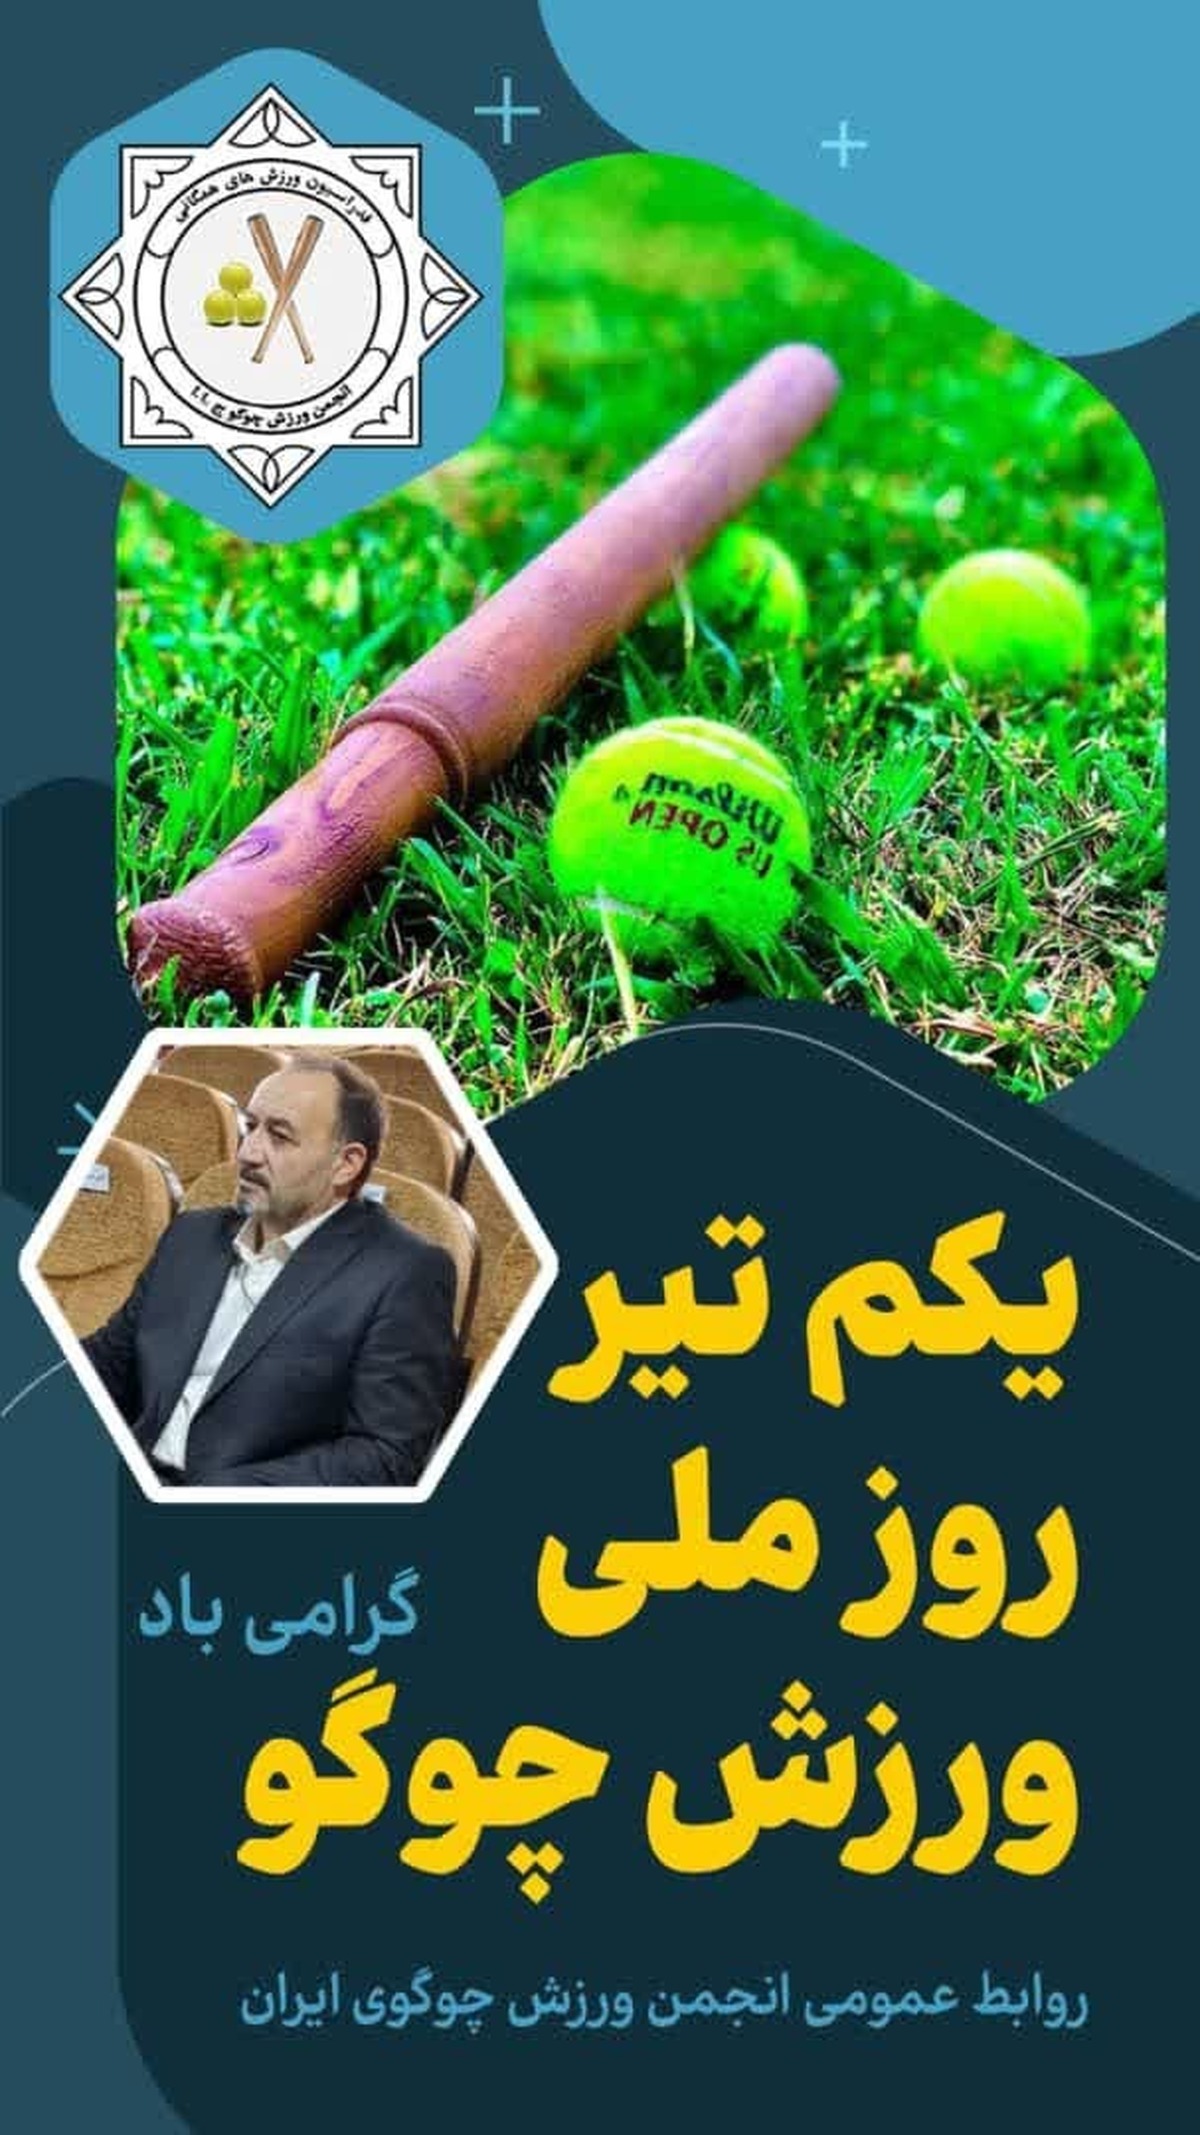 "اول تیرماه روز ملی ورزش چوگوی ایران "